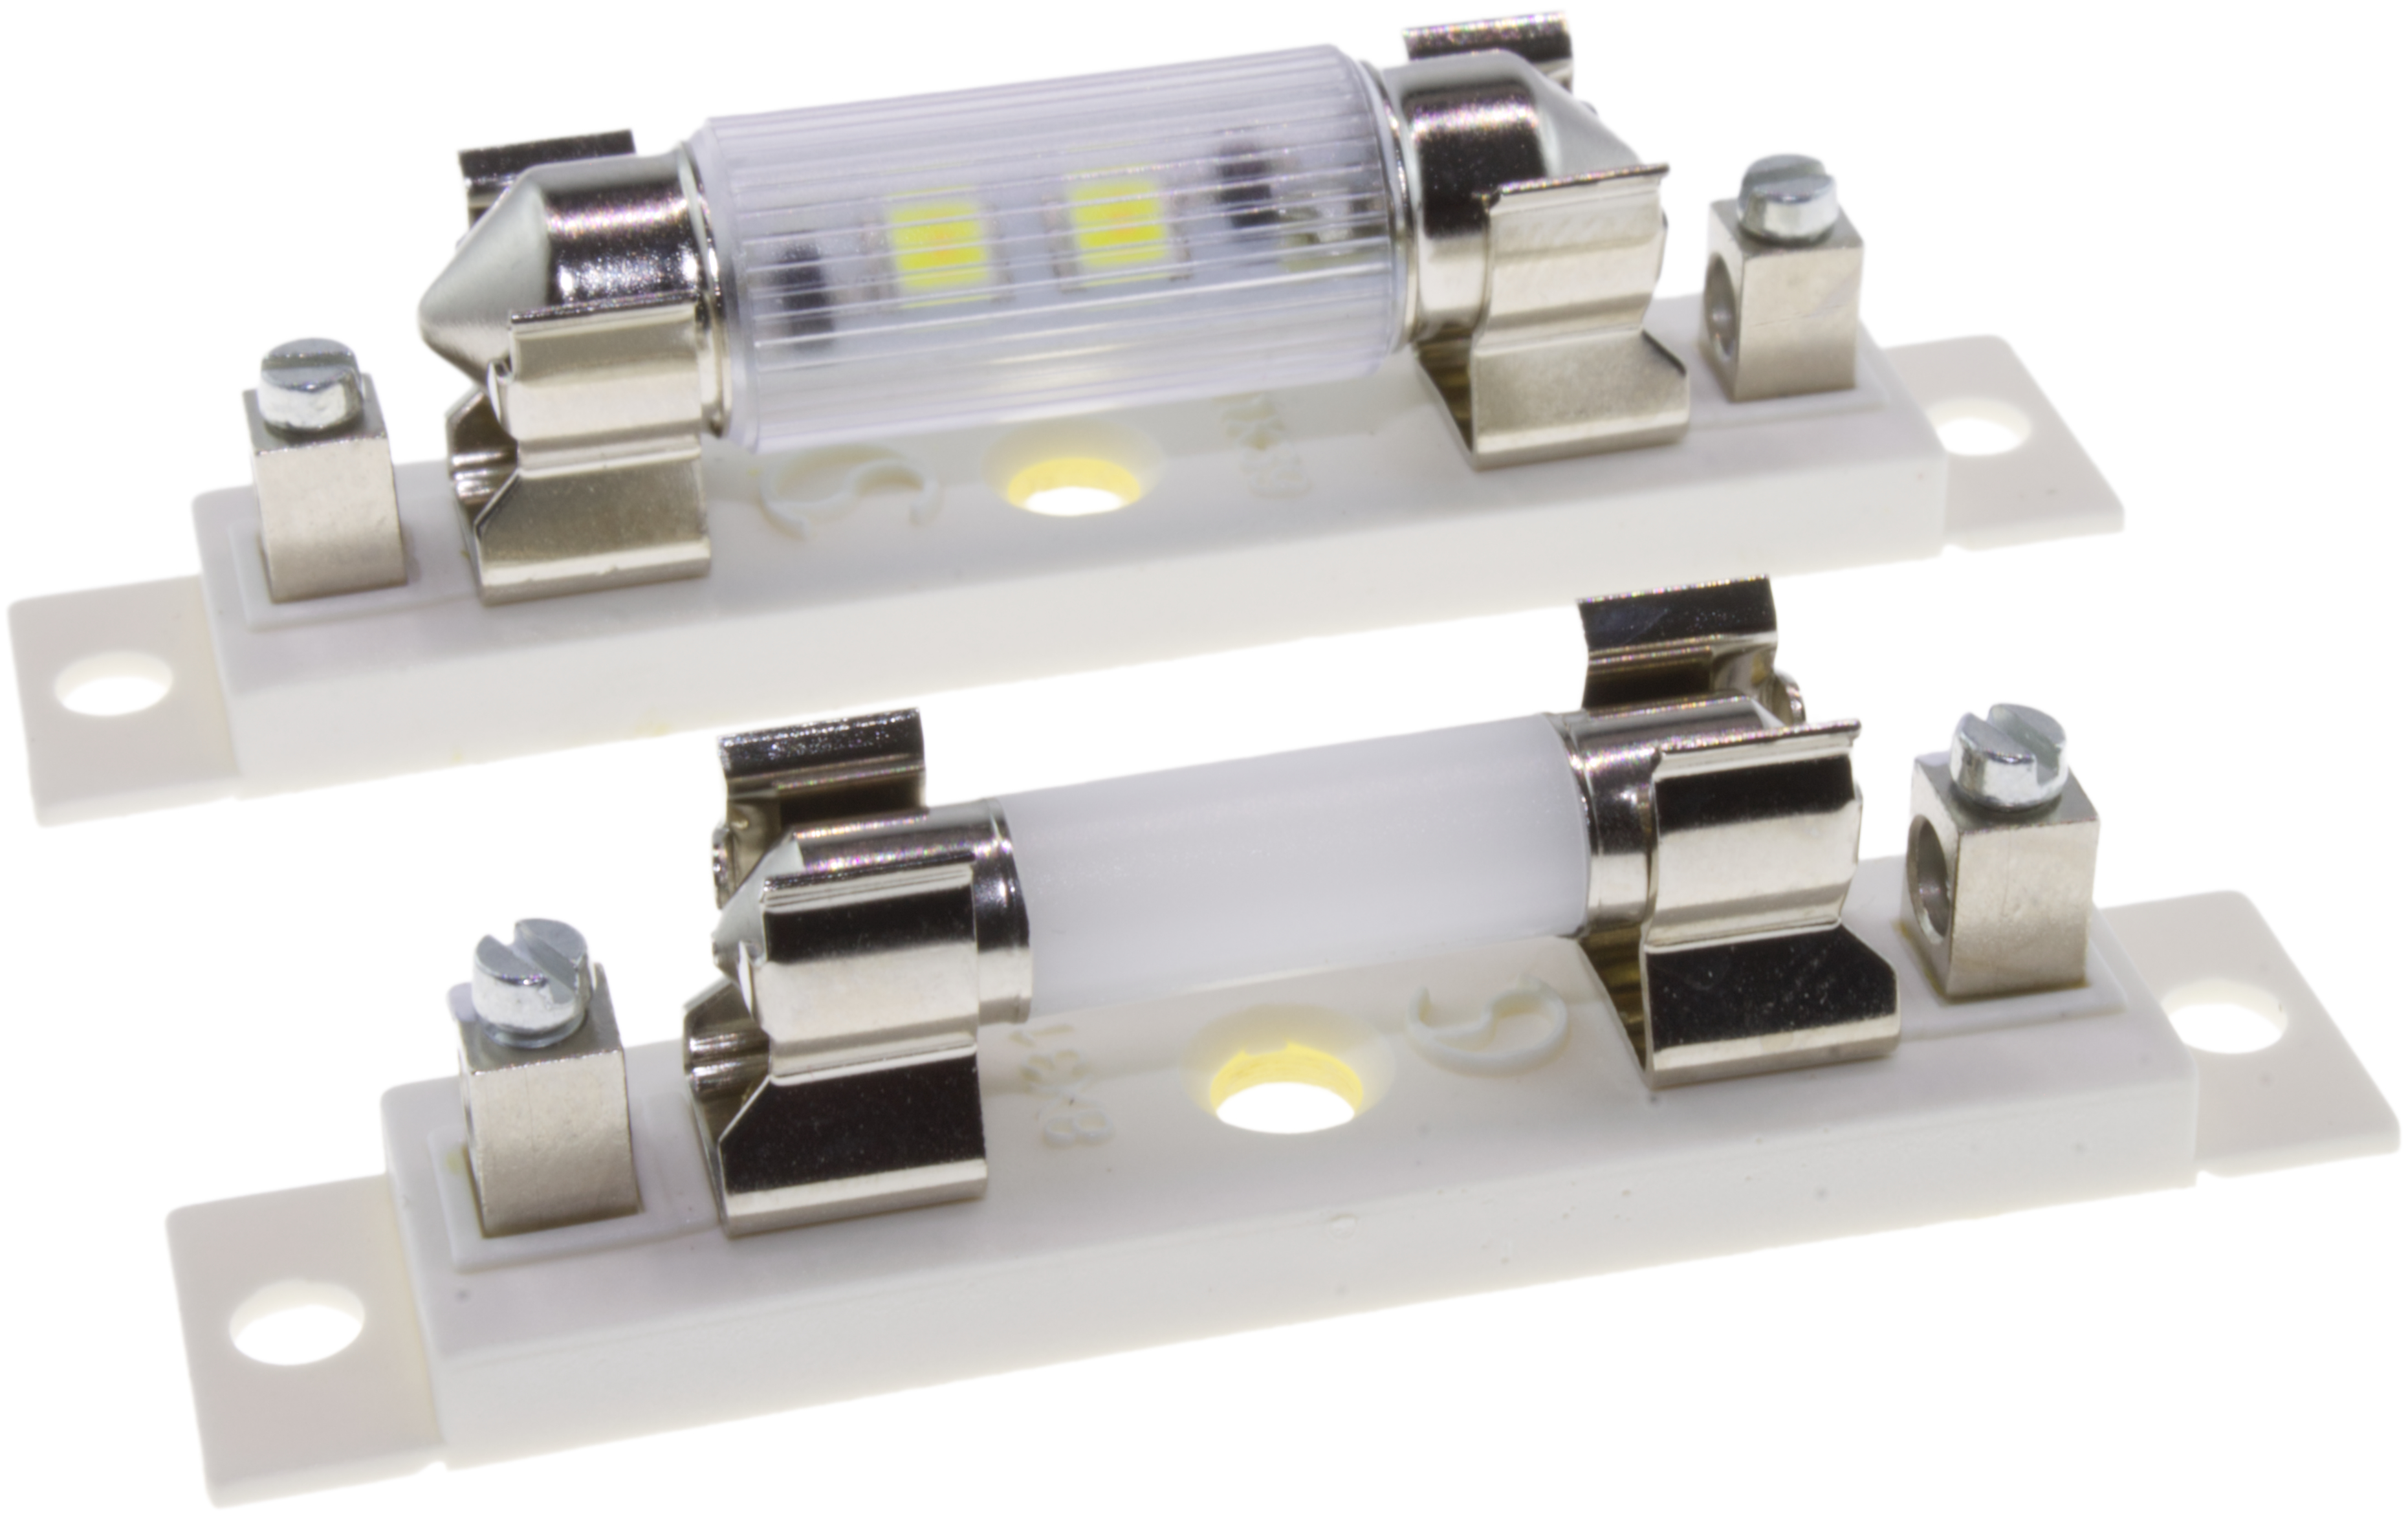 Soffitten-Lampen auf LED-Basis in den Abmessungen Ø 6 x 31 und 6 x 39 mm,  Signal-Construct elektro-optische Anzeigen und Systeme GmbH, Story -  PresseBox